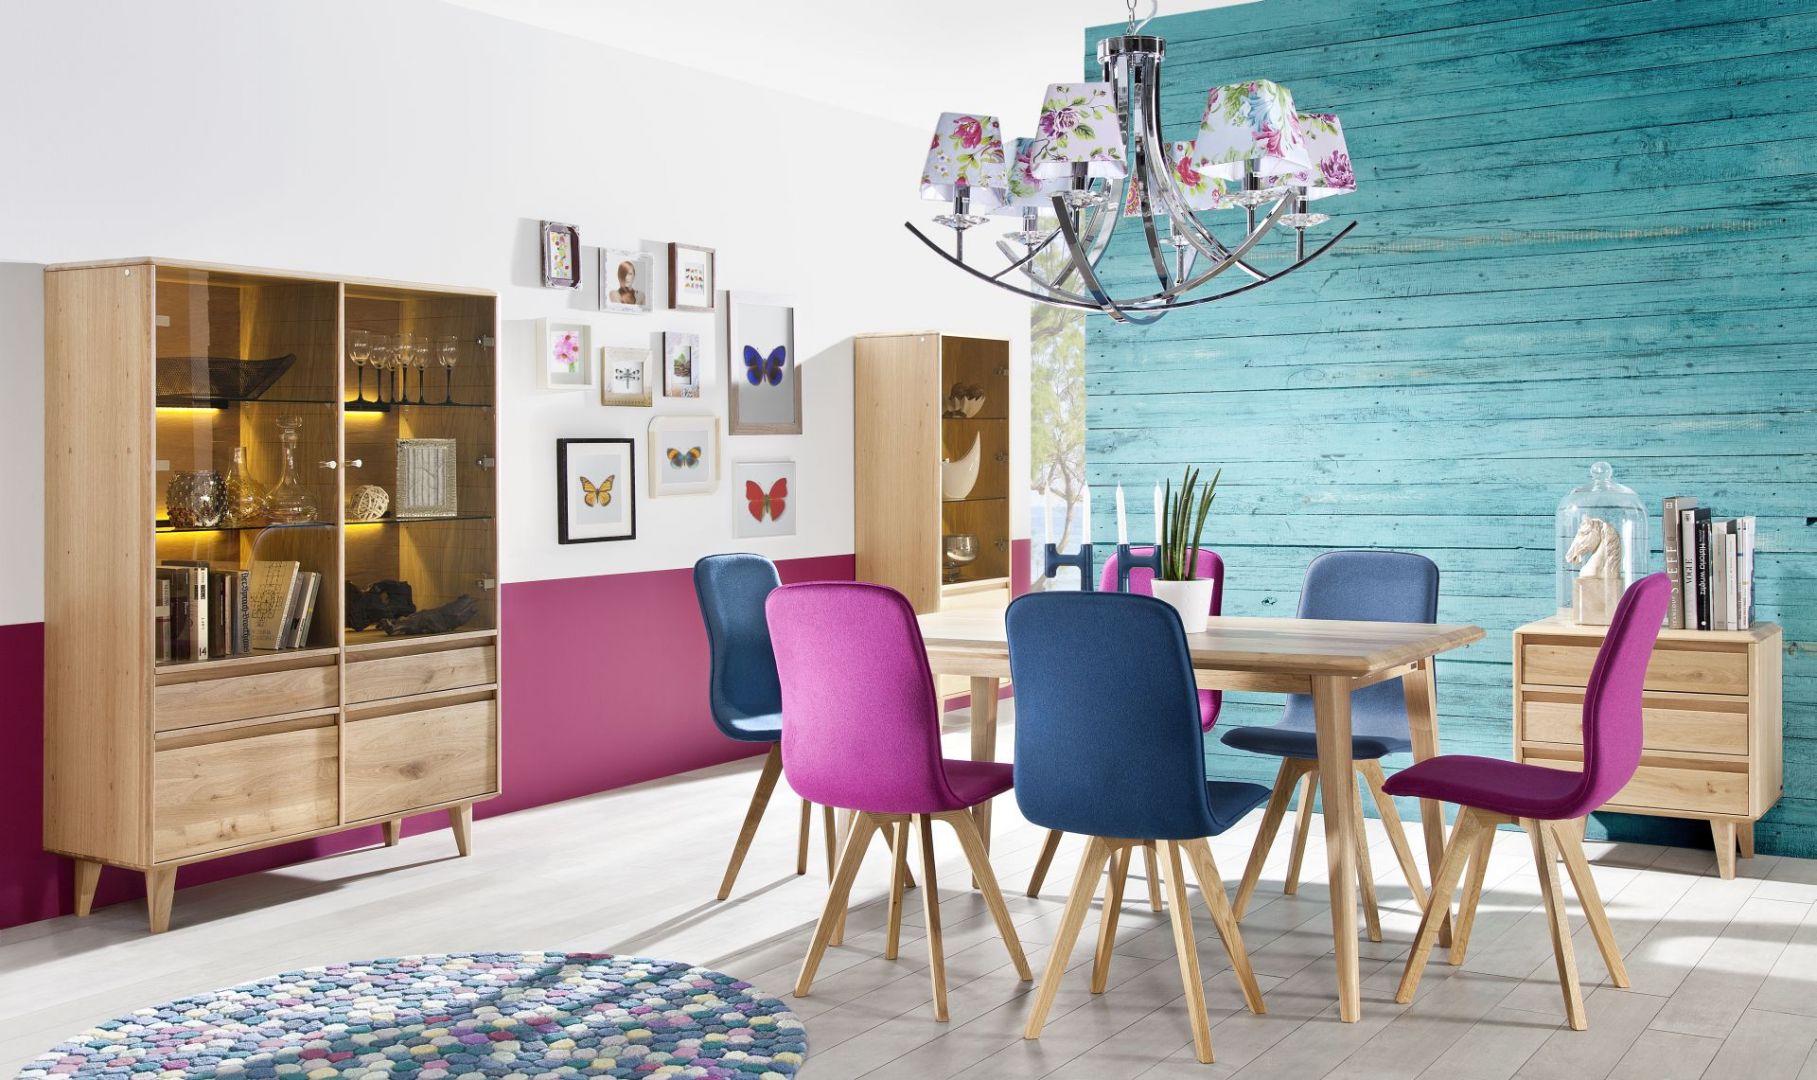 Jadalnia Lovell to proste i bardzo stylowe bryły mebli, wyposażone w ciepłe oświetlenie. Do stołu można dopasować kolorowe krzesła. Fot. Meble Matkowski